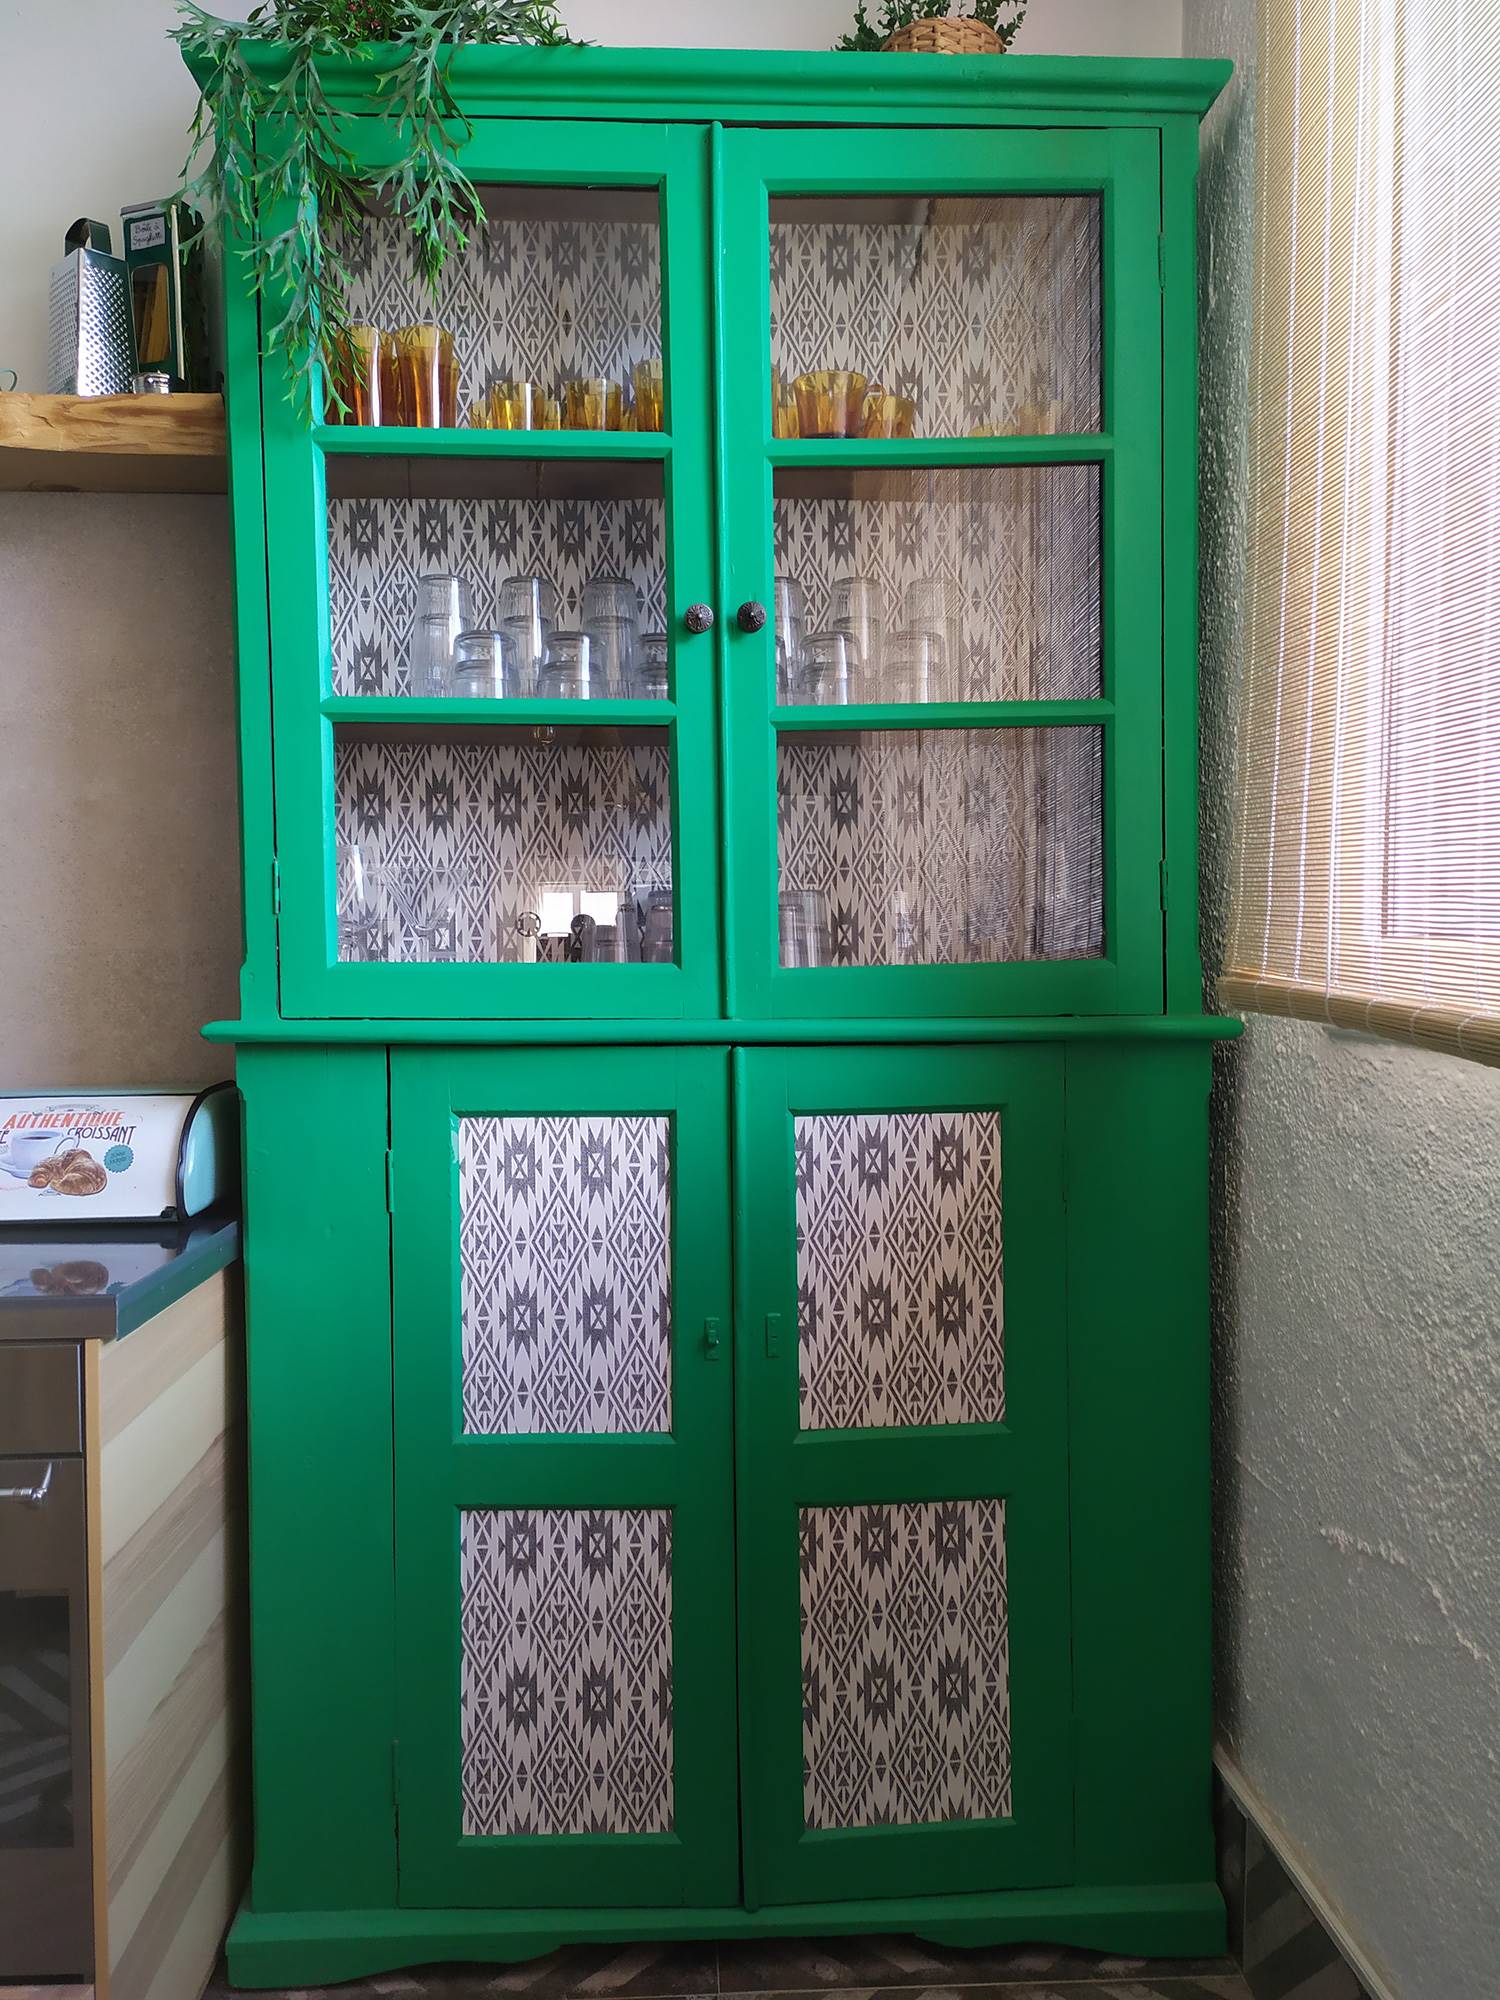 Alacena vintage de color verde decorada con papel pintado con motivos gráficos.